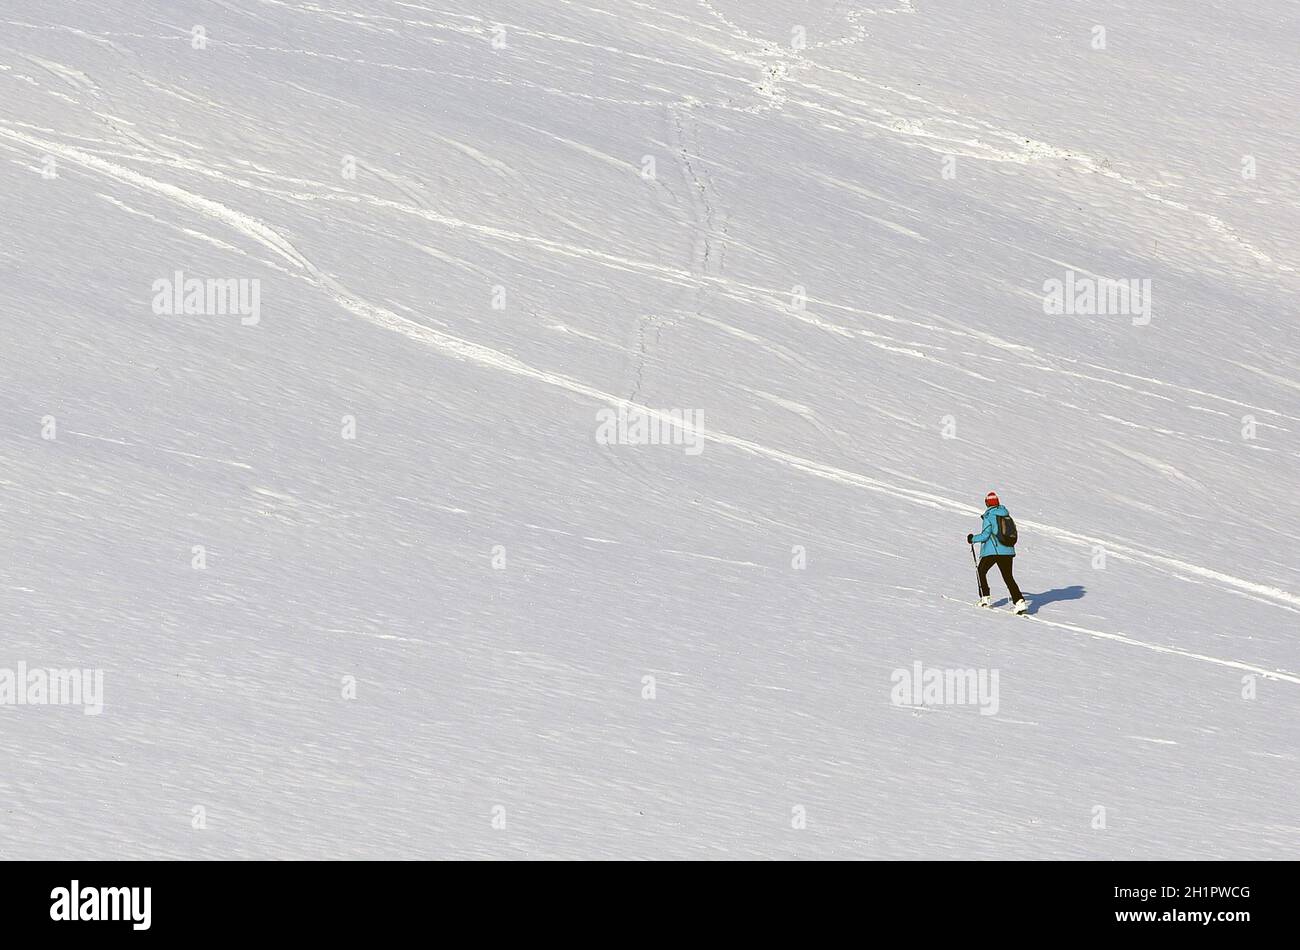 Schitourengeher Altmünster (Bezirk Gmunden, Oberösterreich, Österreich) - Ski tourers Altmünster (distretto di Gmunden, Austria superiore, Austria) Foto Stock